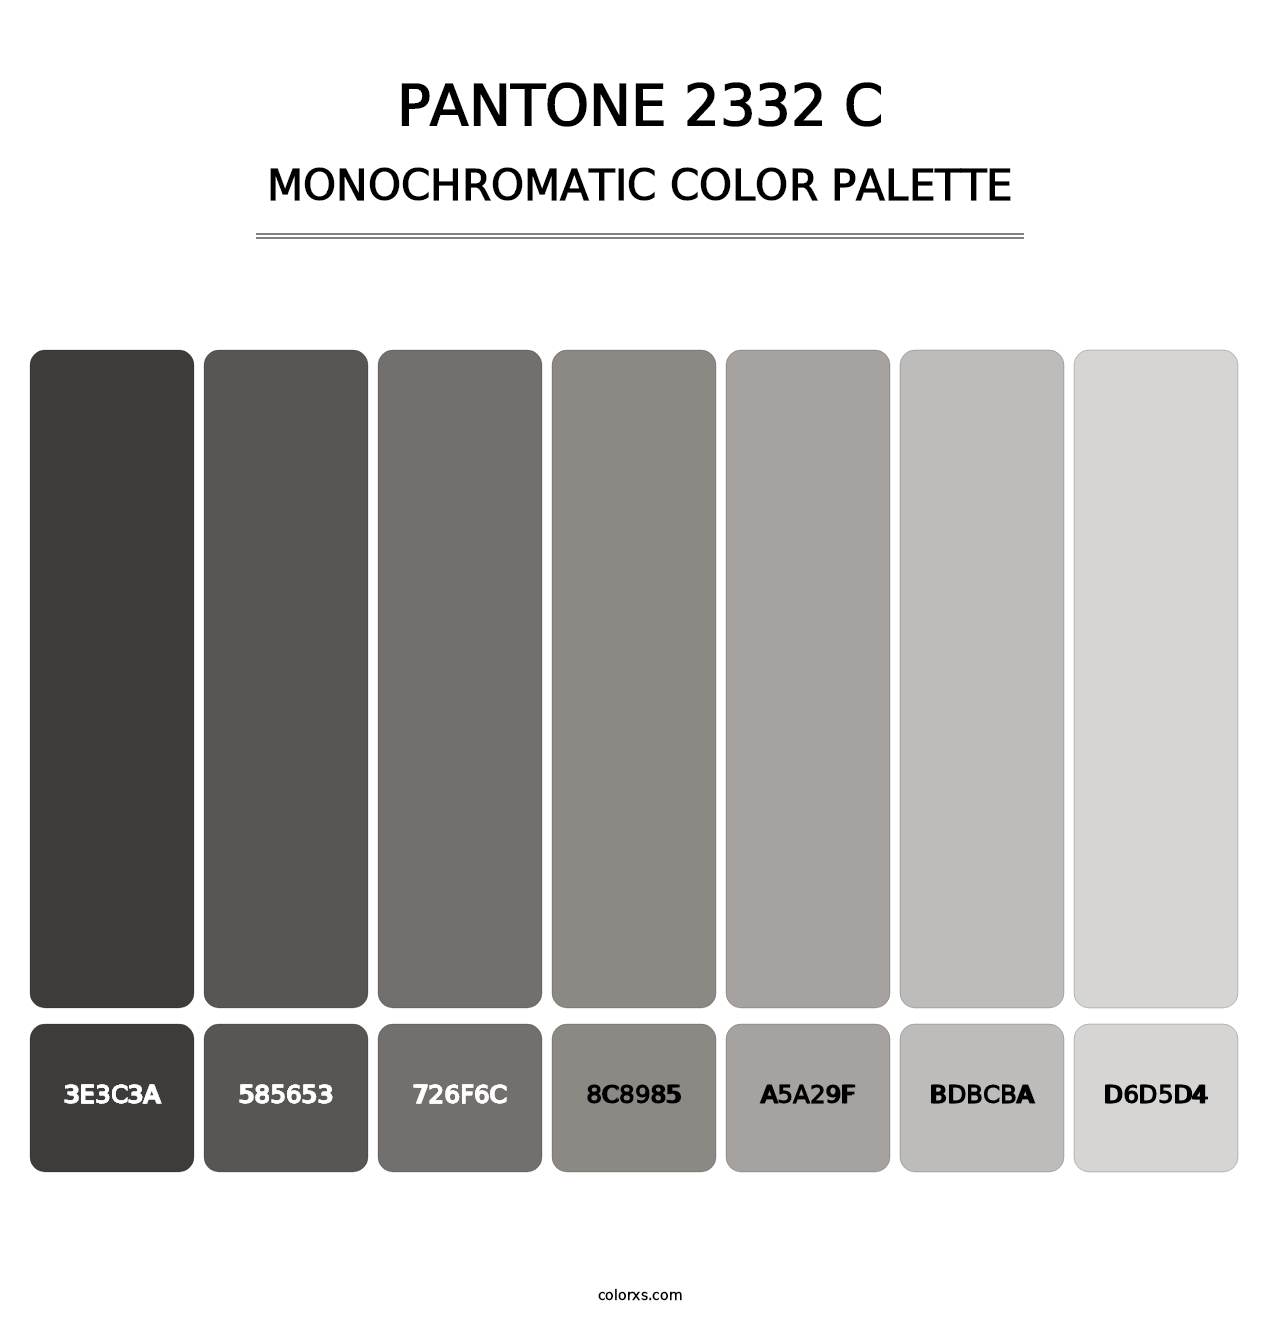 PANTONE 2332 C - Monochromatic Color Palette